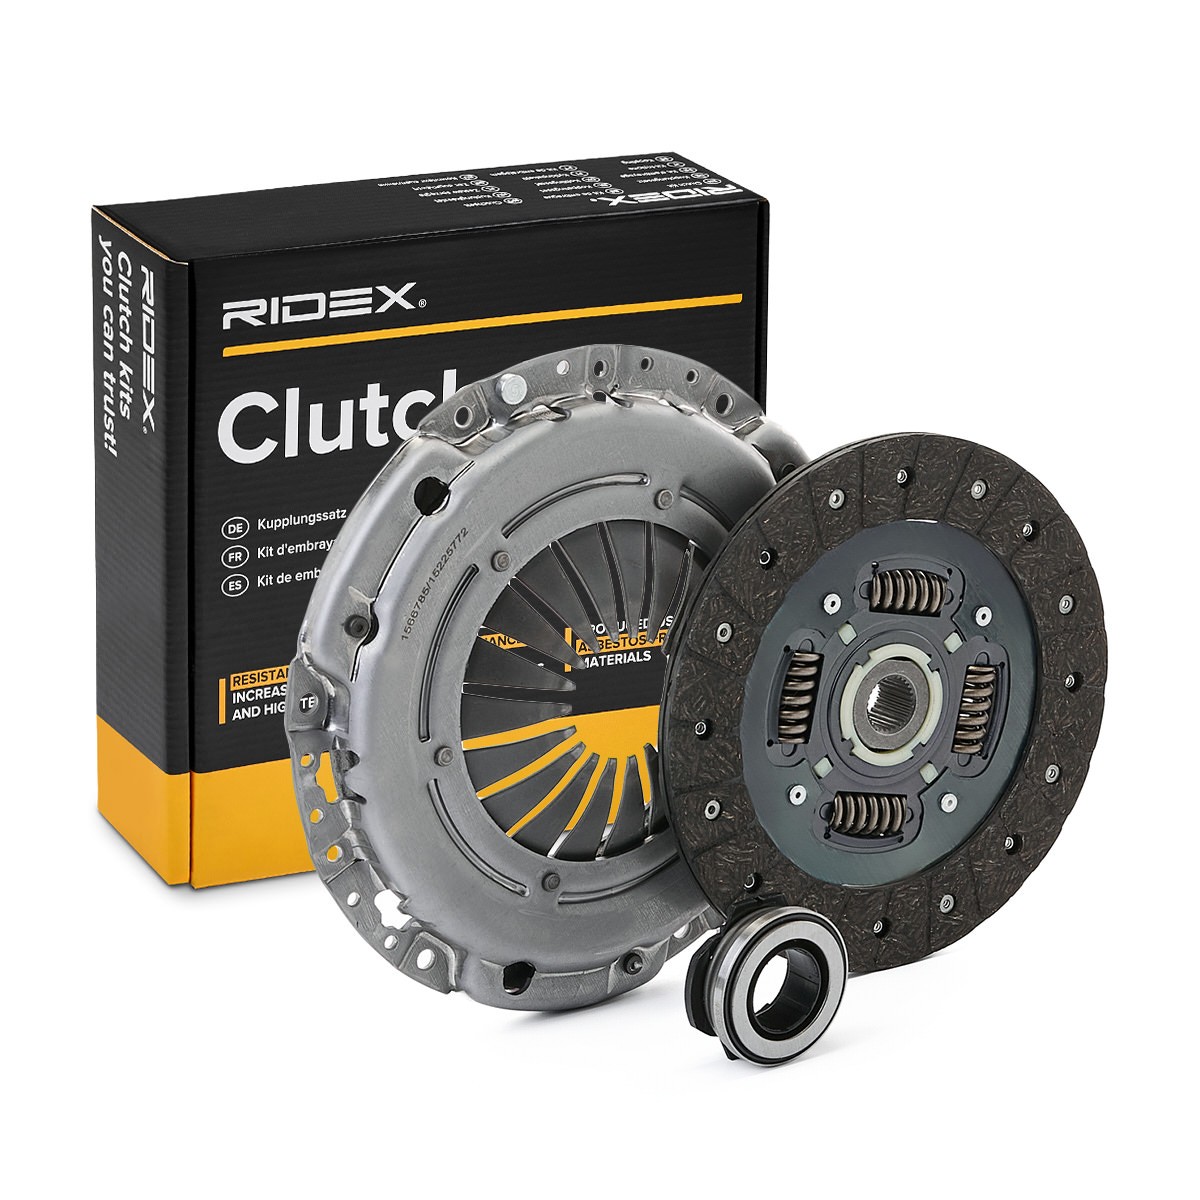 RIDEX 479C0465 Clutch kit with clutch pressure plate, with clutch disc, with clutch release bearing, 215mm